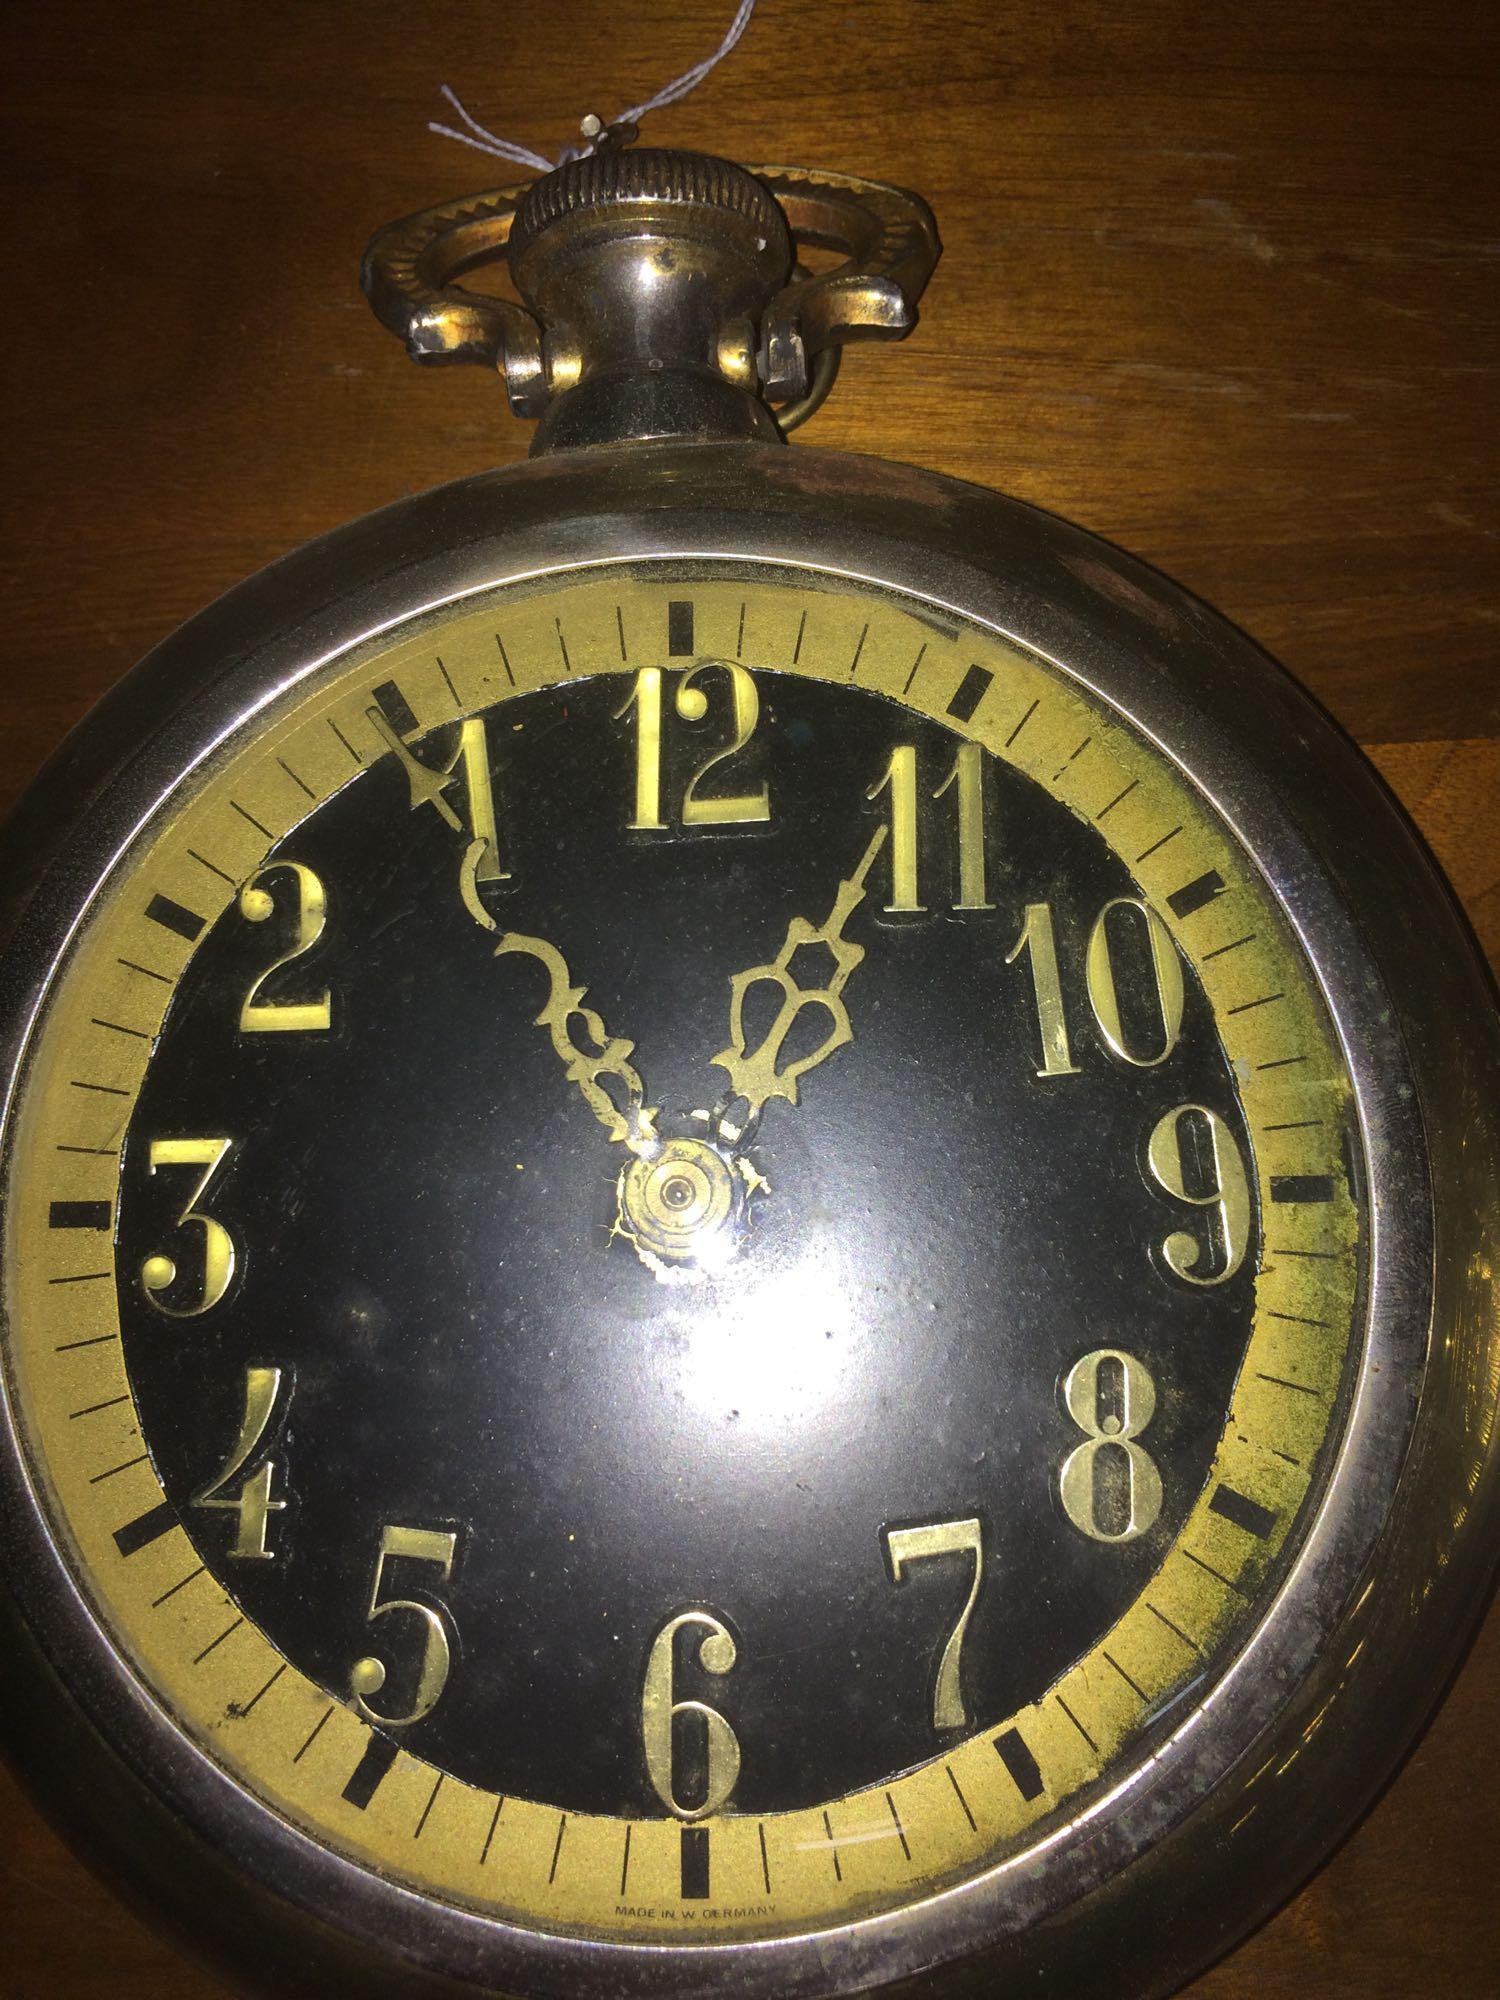 Lot of vintage clocks one runs backwards